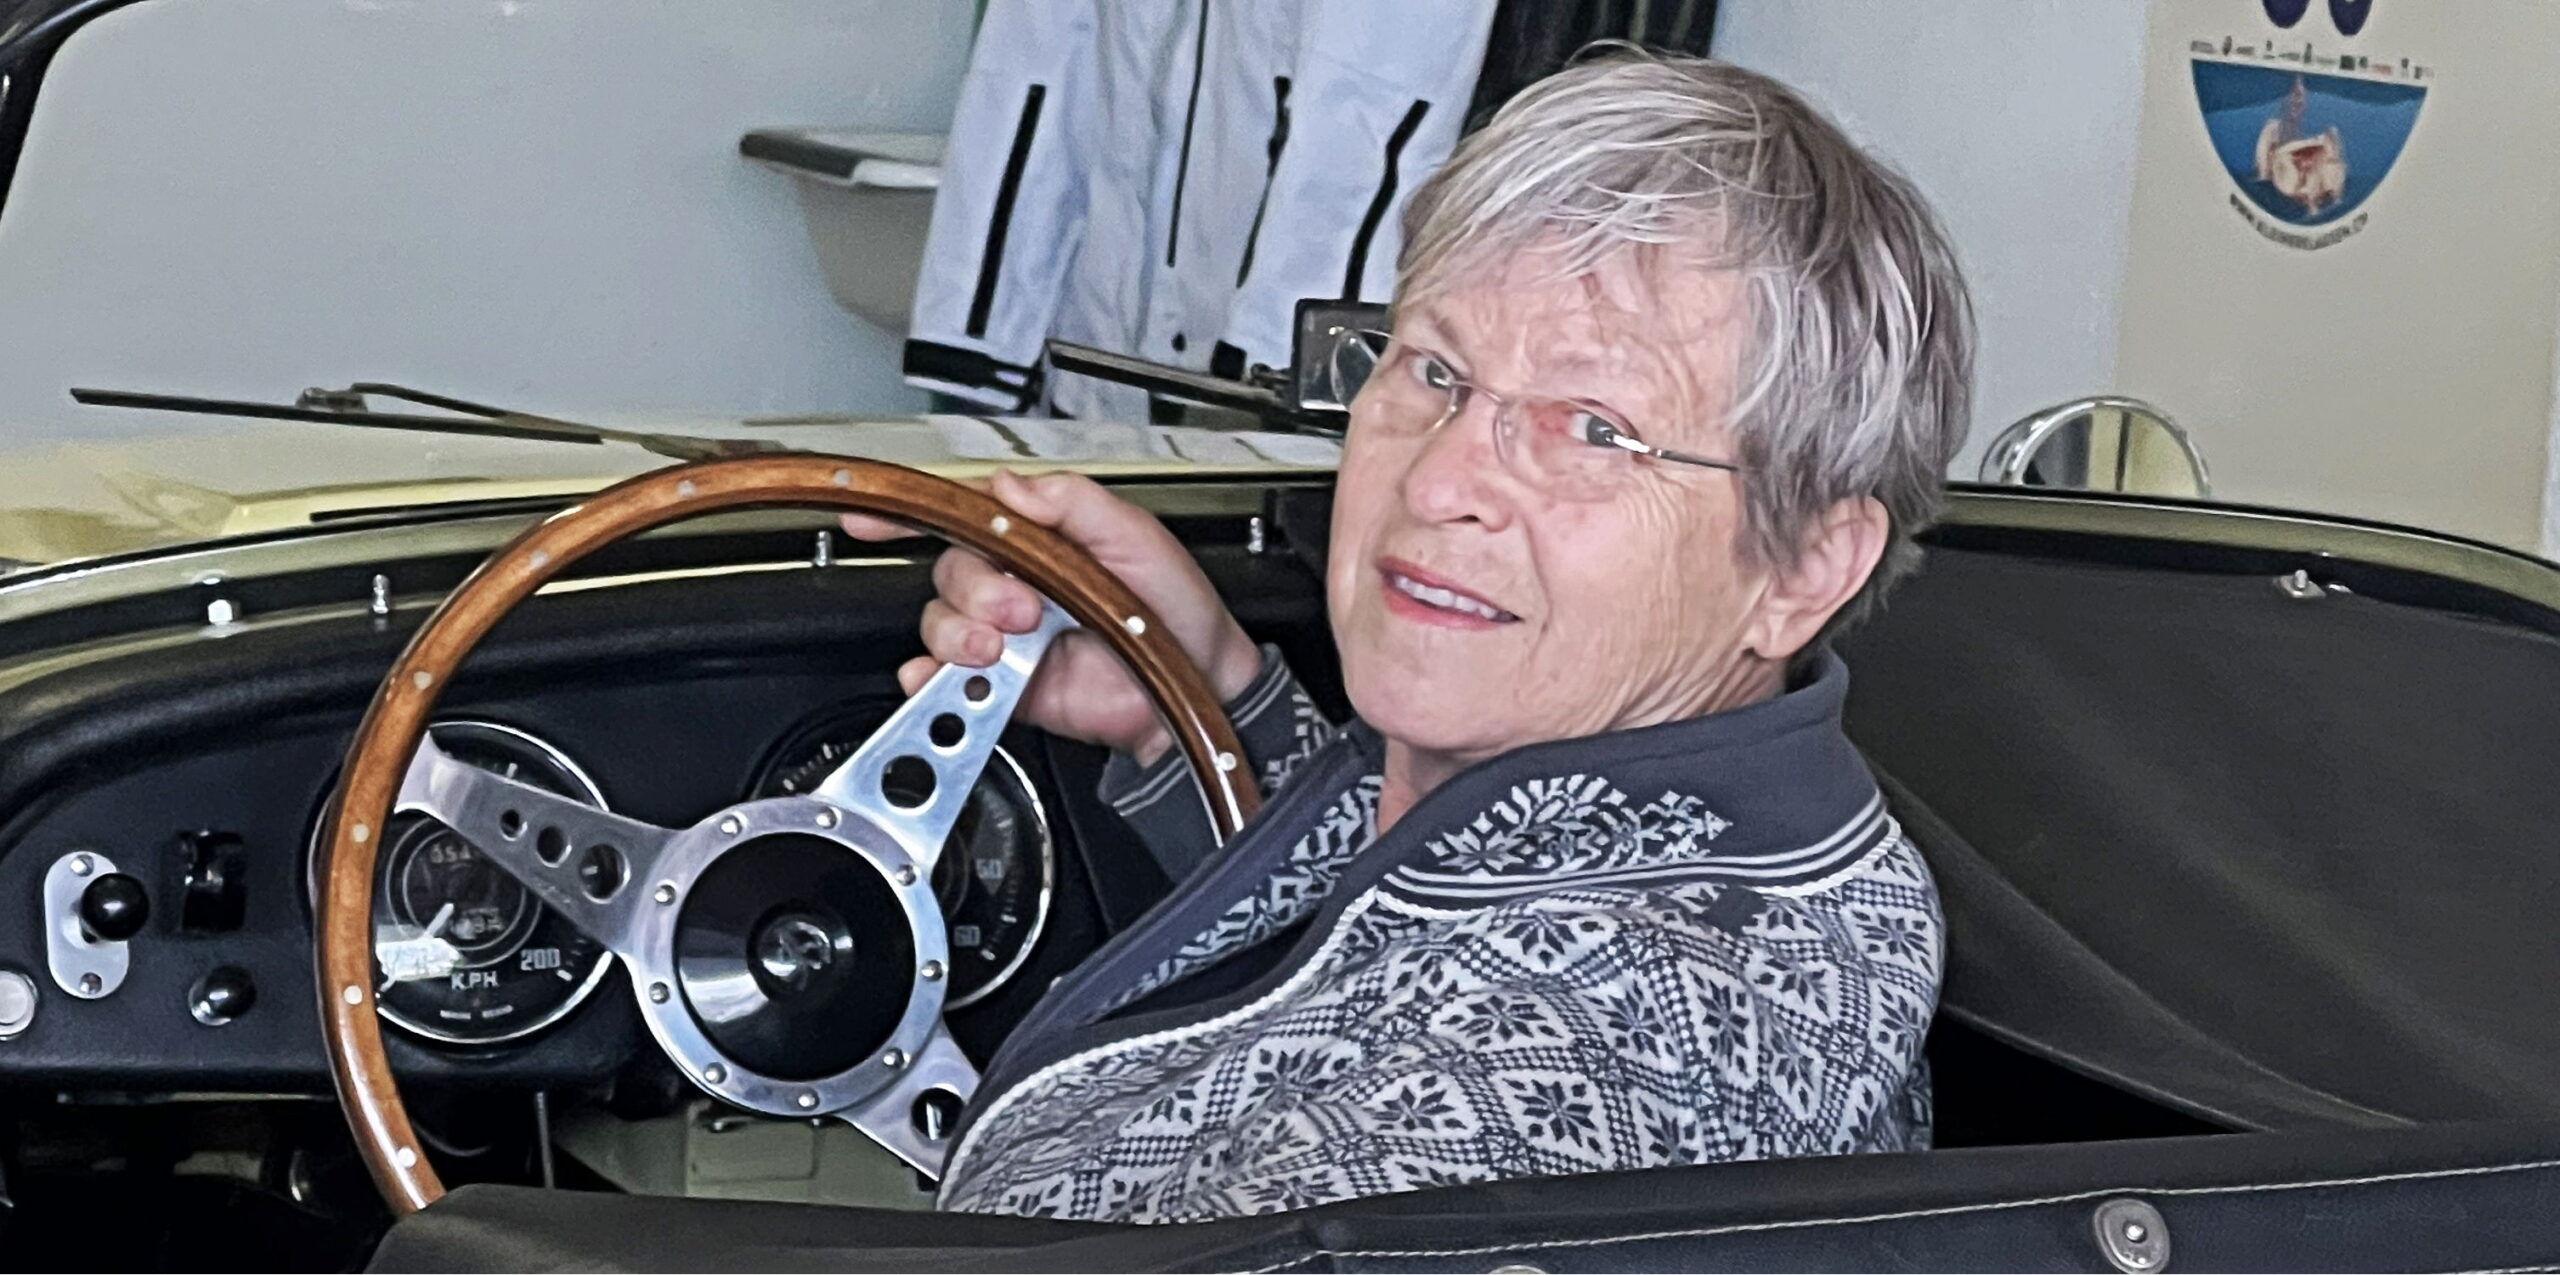 Für die technische Ausstattung von Operationssälen verantwortlich, ein Dienstgrad als Hauptmann oder als Unternehmerin – das ist 
Yvonne Bucher. Gerne ist sie mit ihrem Oldtimer unterwegs. (Bild: fs)